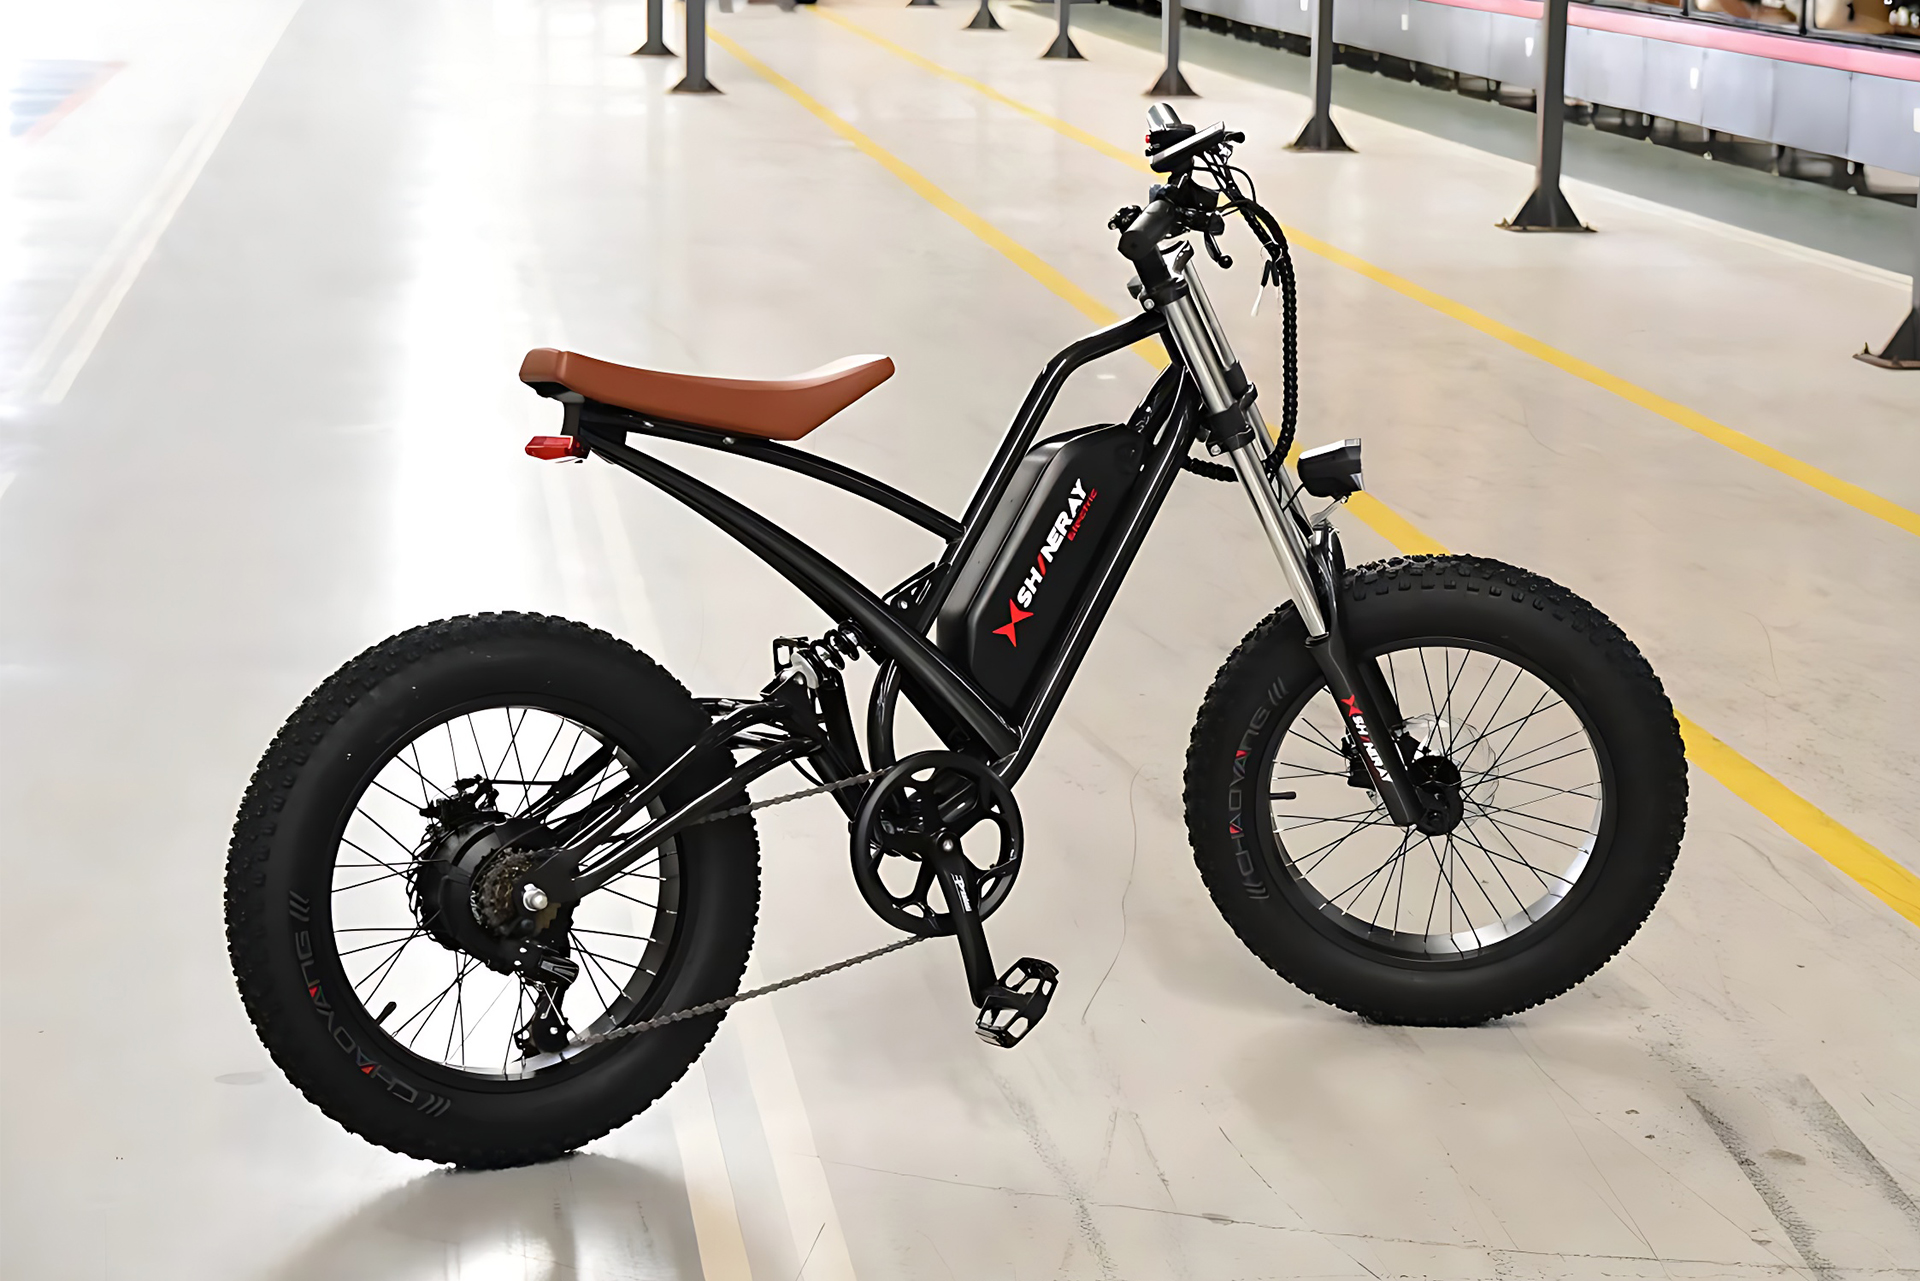 Shineray SE-Bike Plus é a nova bicicleta elétrica que custa mais de 10 mil reais e possui motor de 350 watts